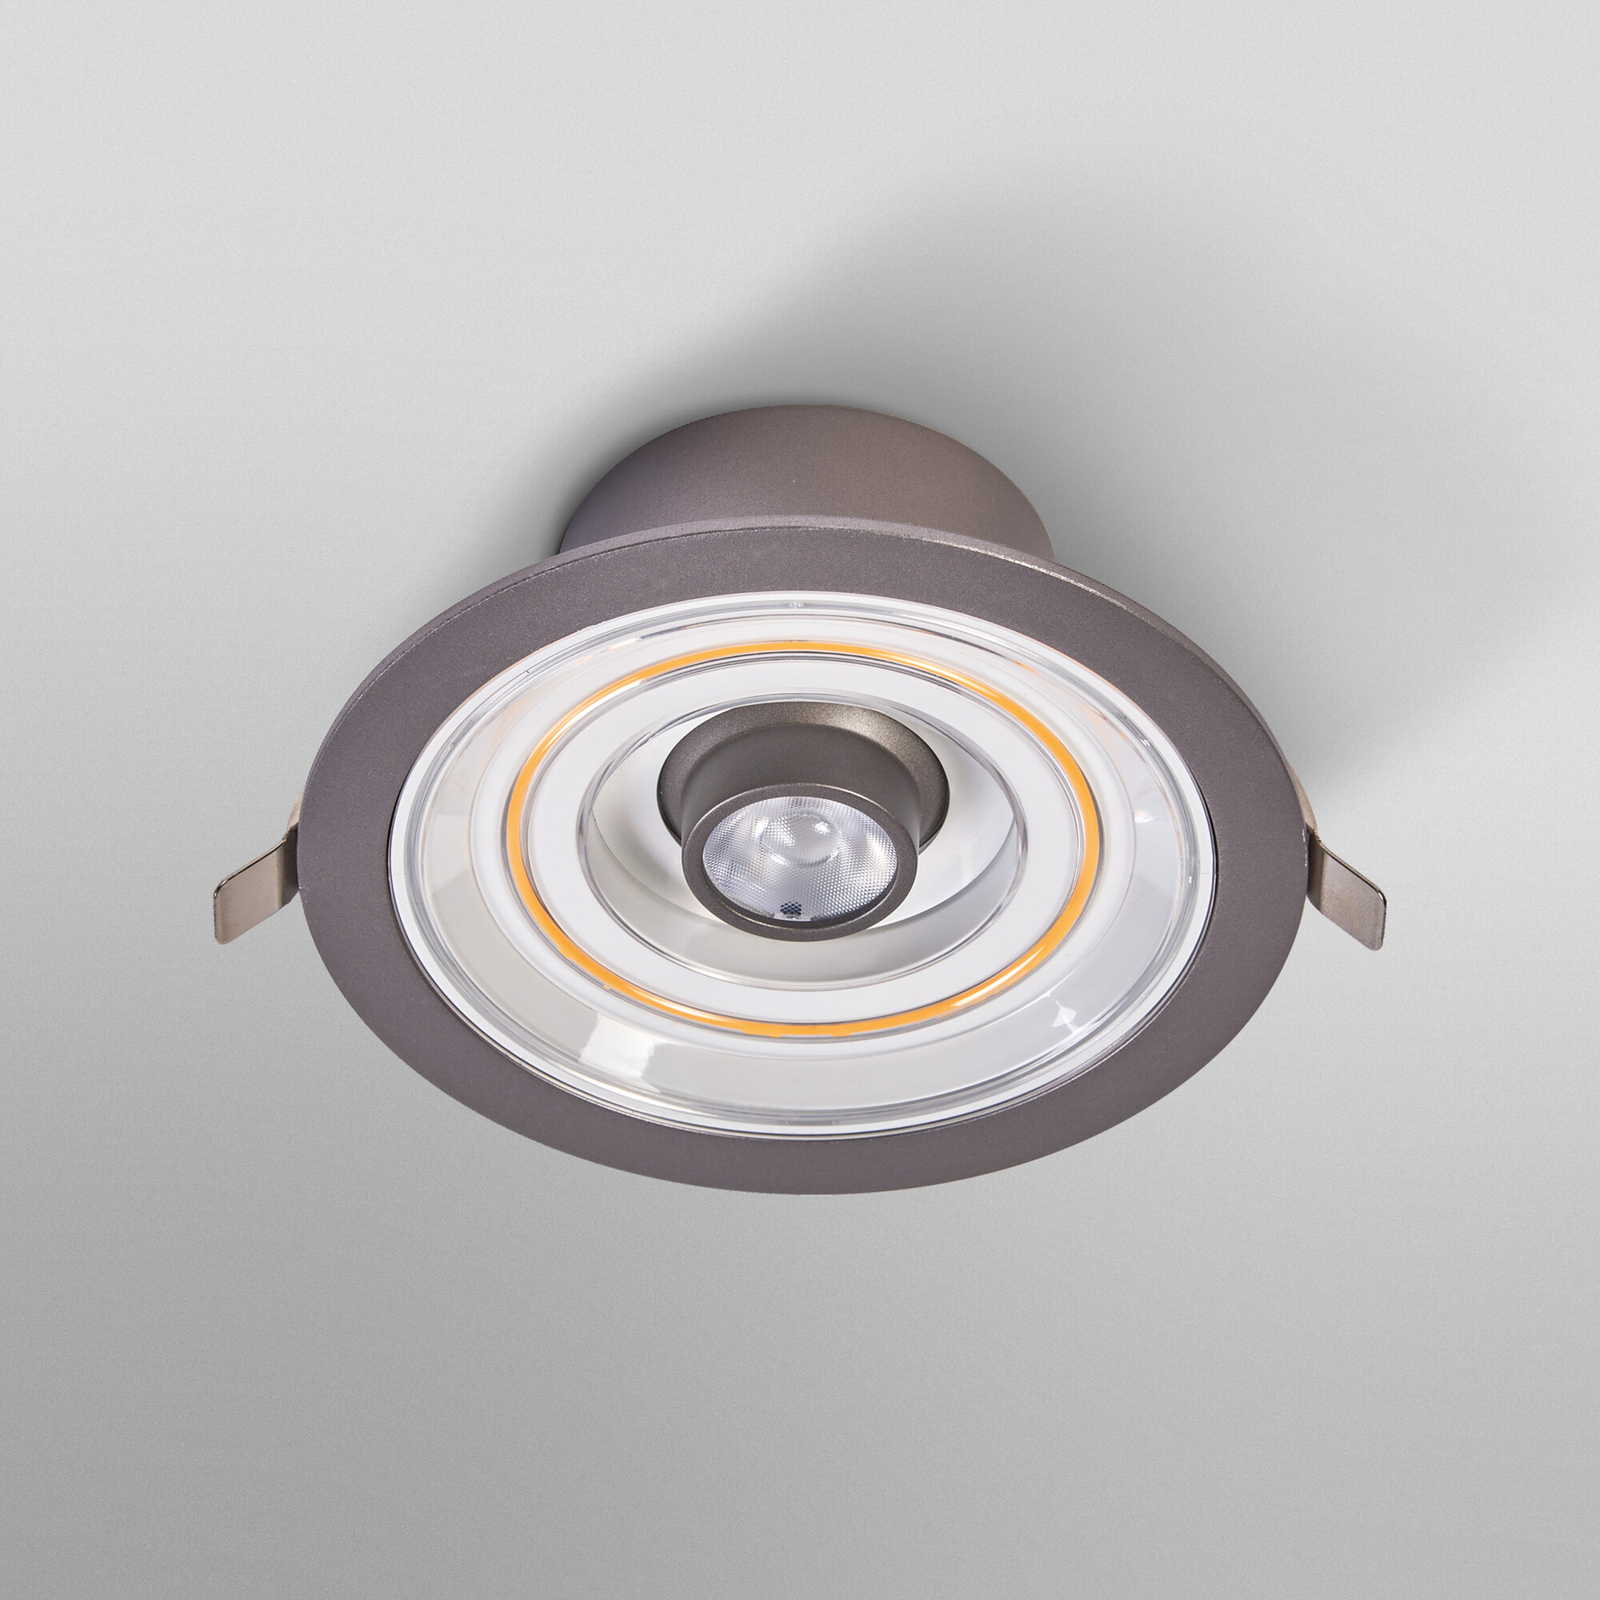 Ledvance Decor Filament Halo downlight LED